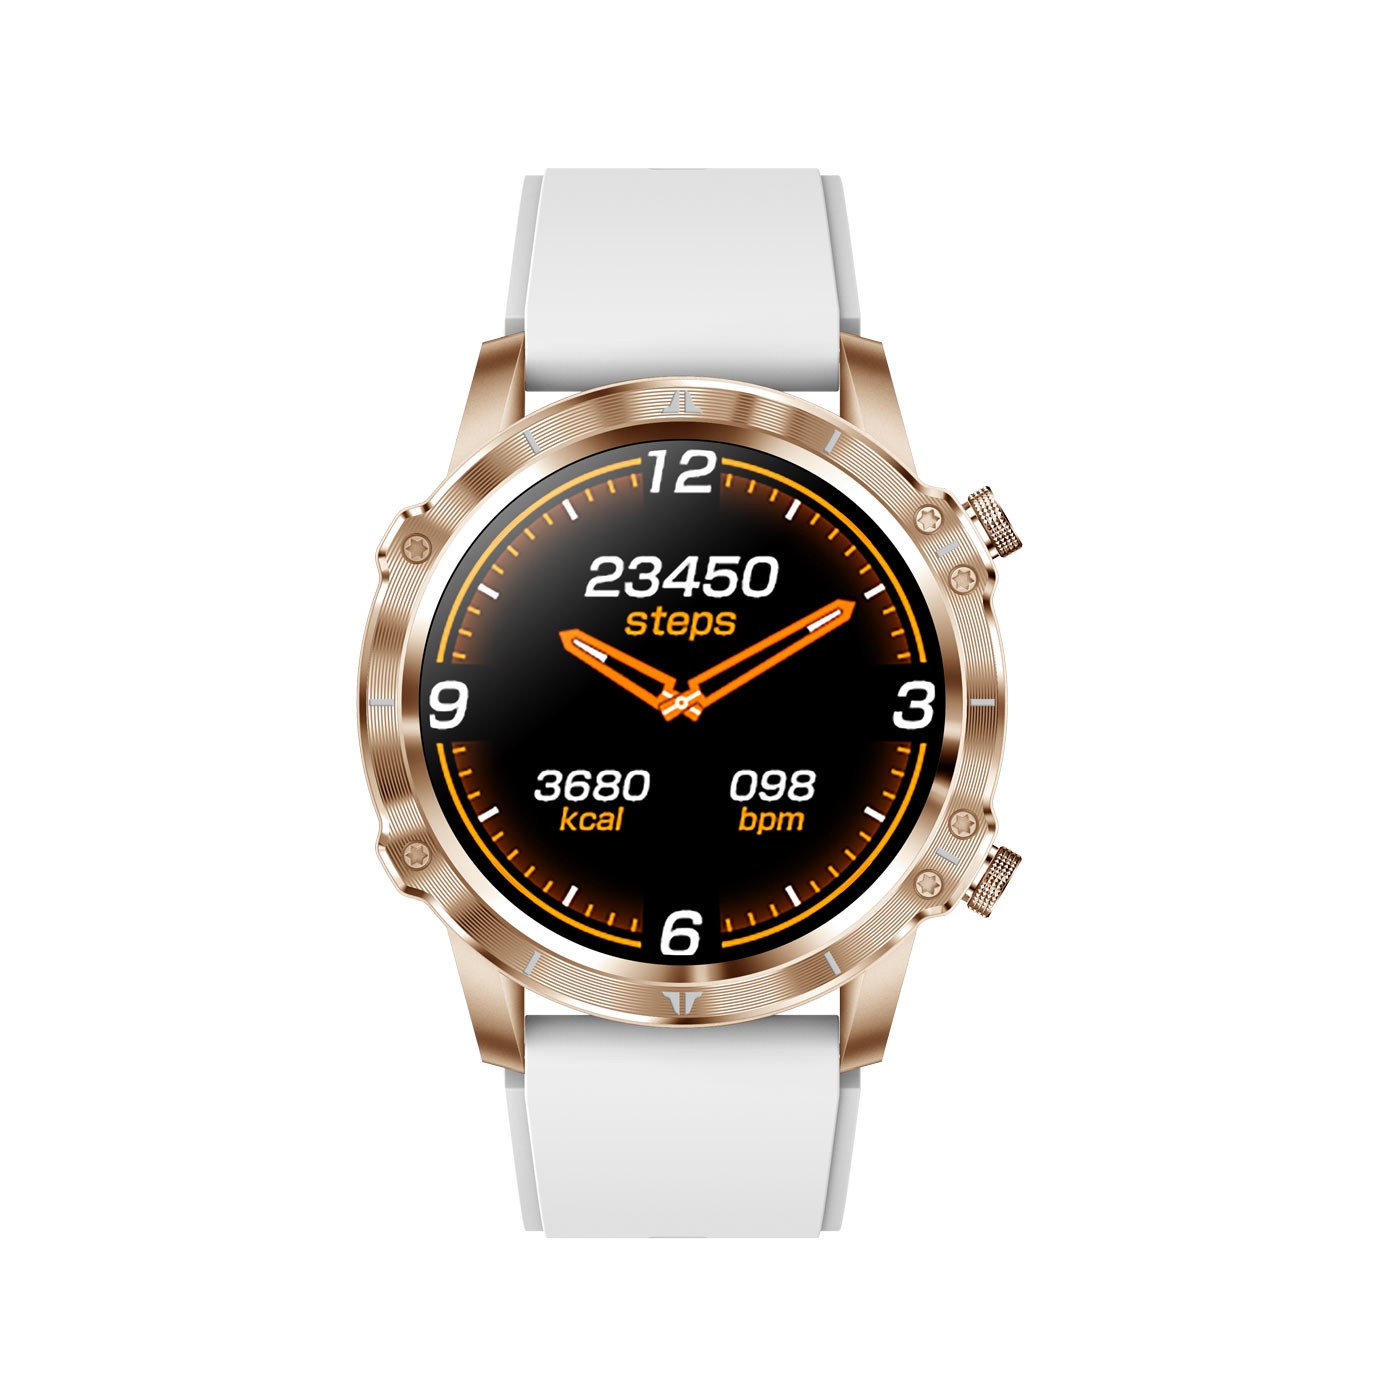 Smartwatch, Adventure HR+ gold CARNEO gold,